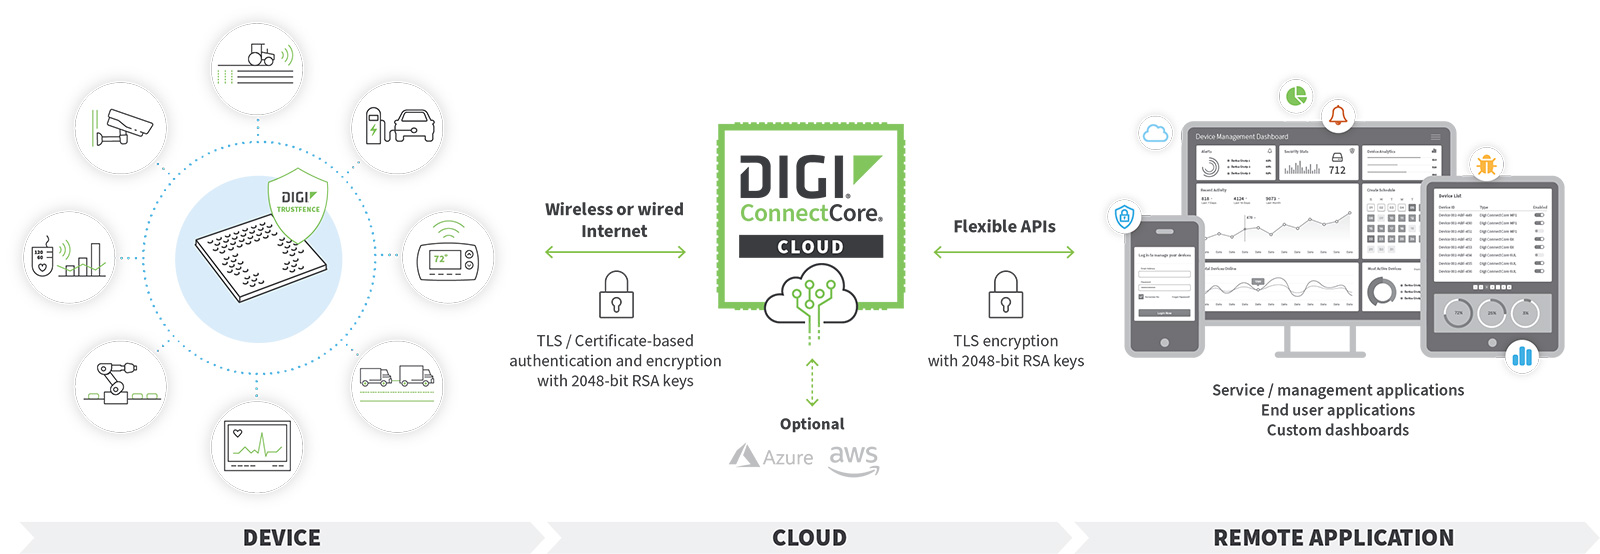 digi-connectcore-cloud-services-diagram-a8.jpg